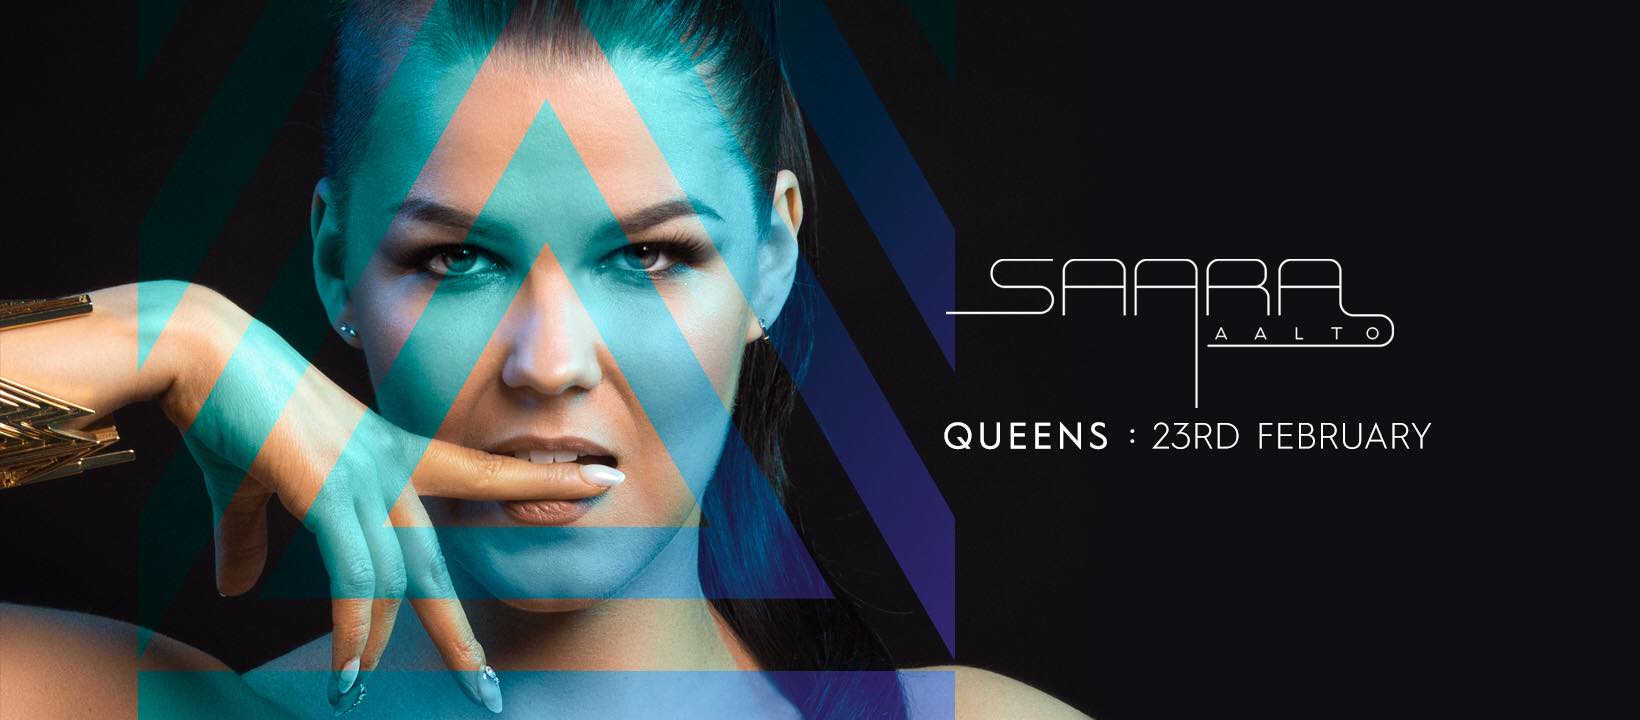 Φινλανδία : Οι Queens η τελευταία συμμετοχή της Saara Aalto για το UMK18 – Δείτε το Video Clip